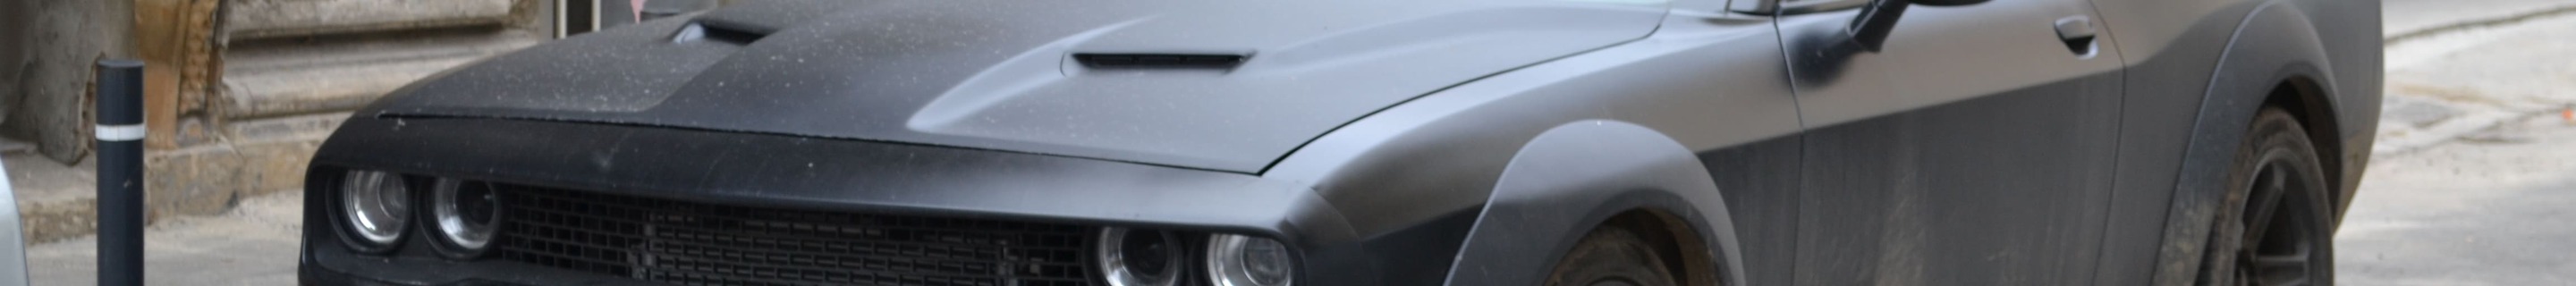 Dodge Challenger SRT Hellcat Widebody